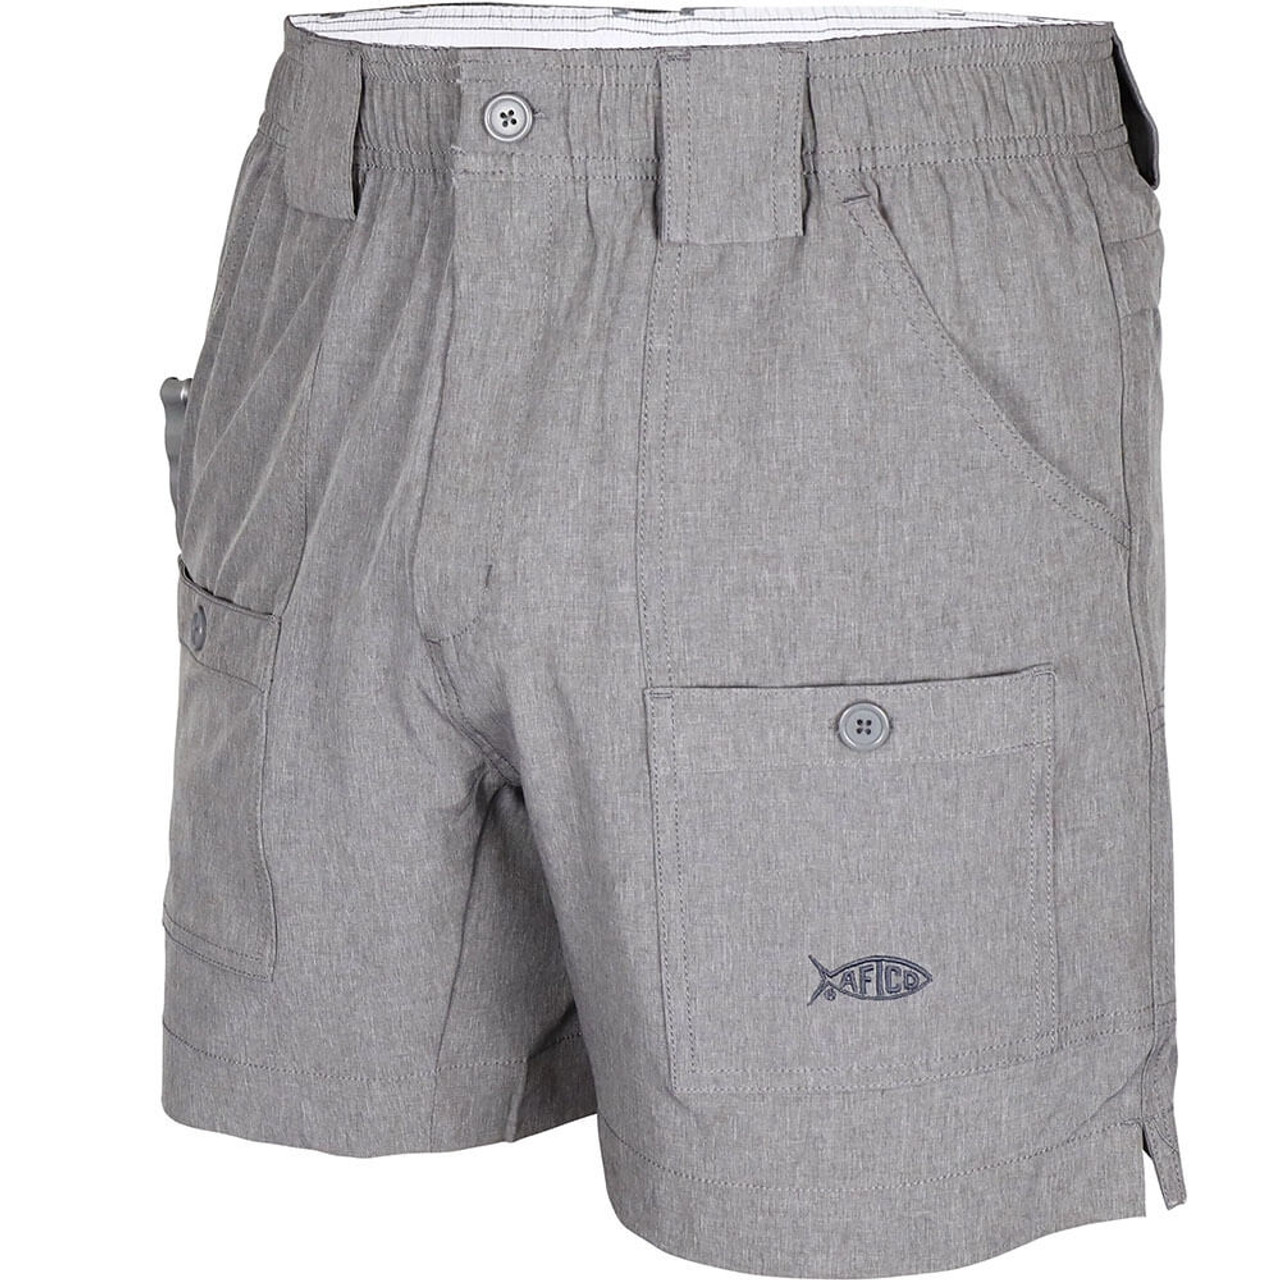 AFTCO Men's Original Fishing Shorts - 6 Inseam